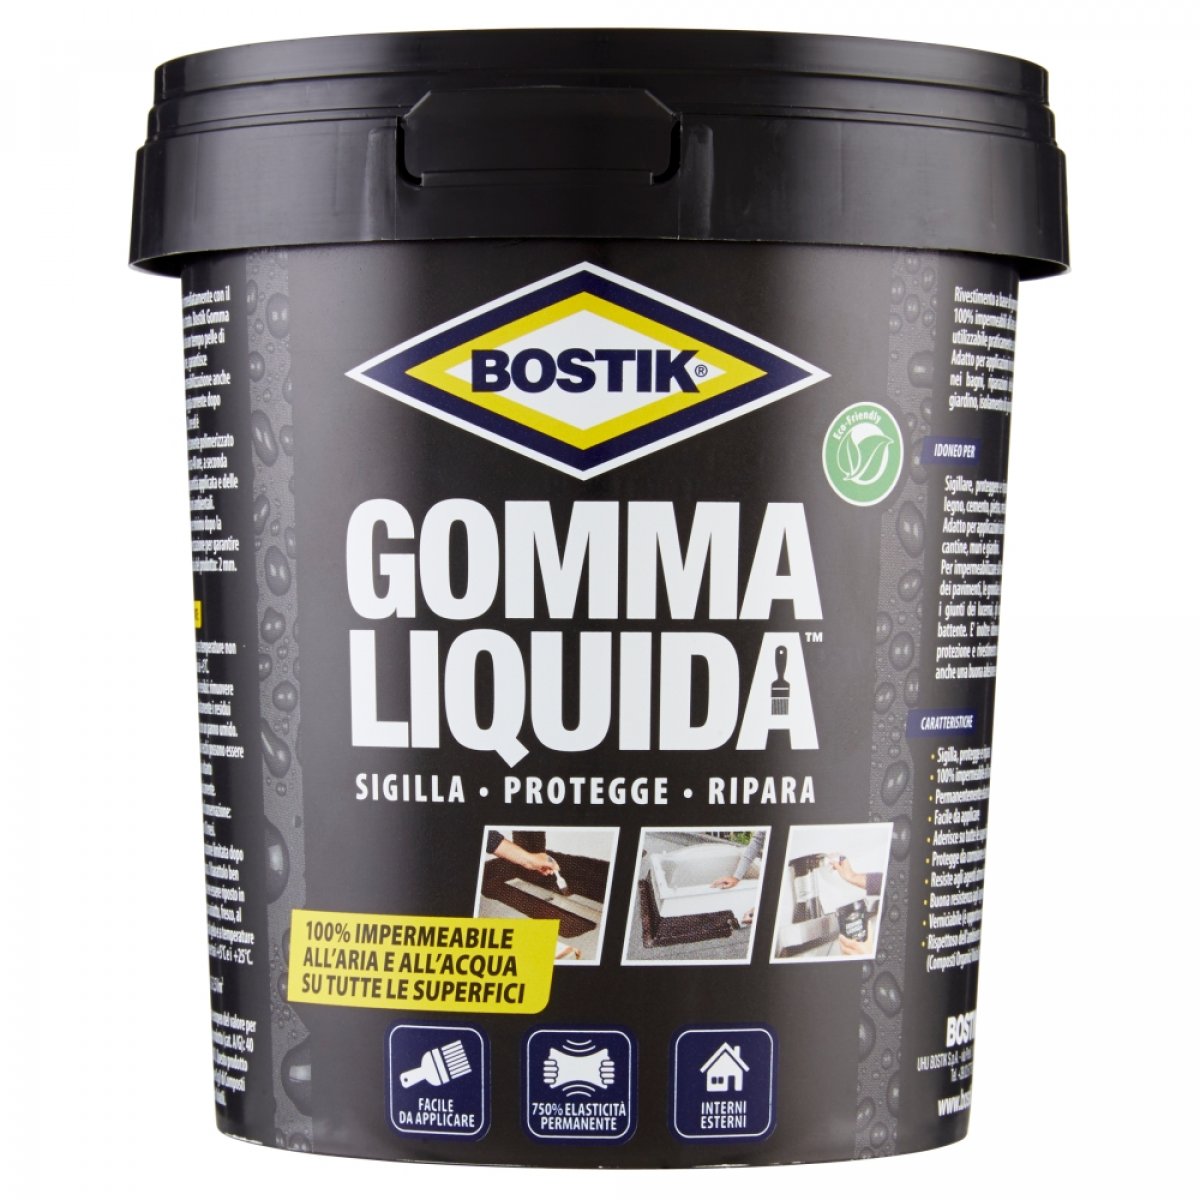 Bostik Gomma Liquida Kit di riparazione 